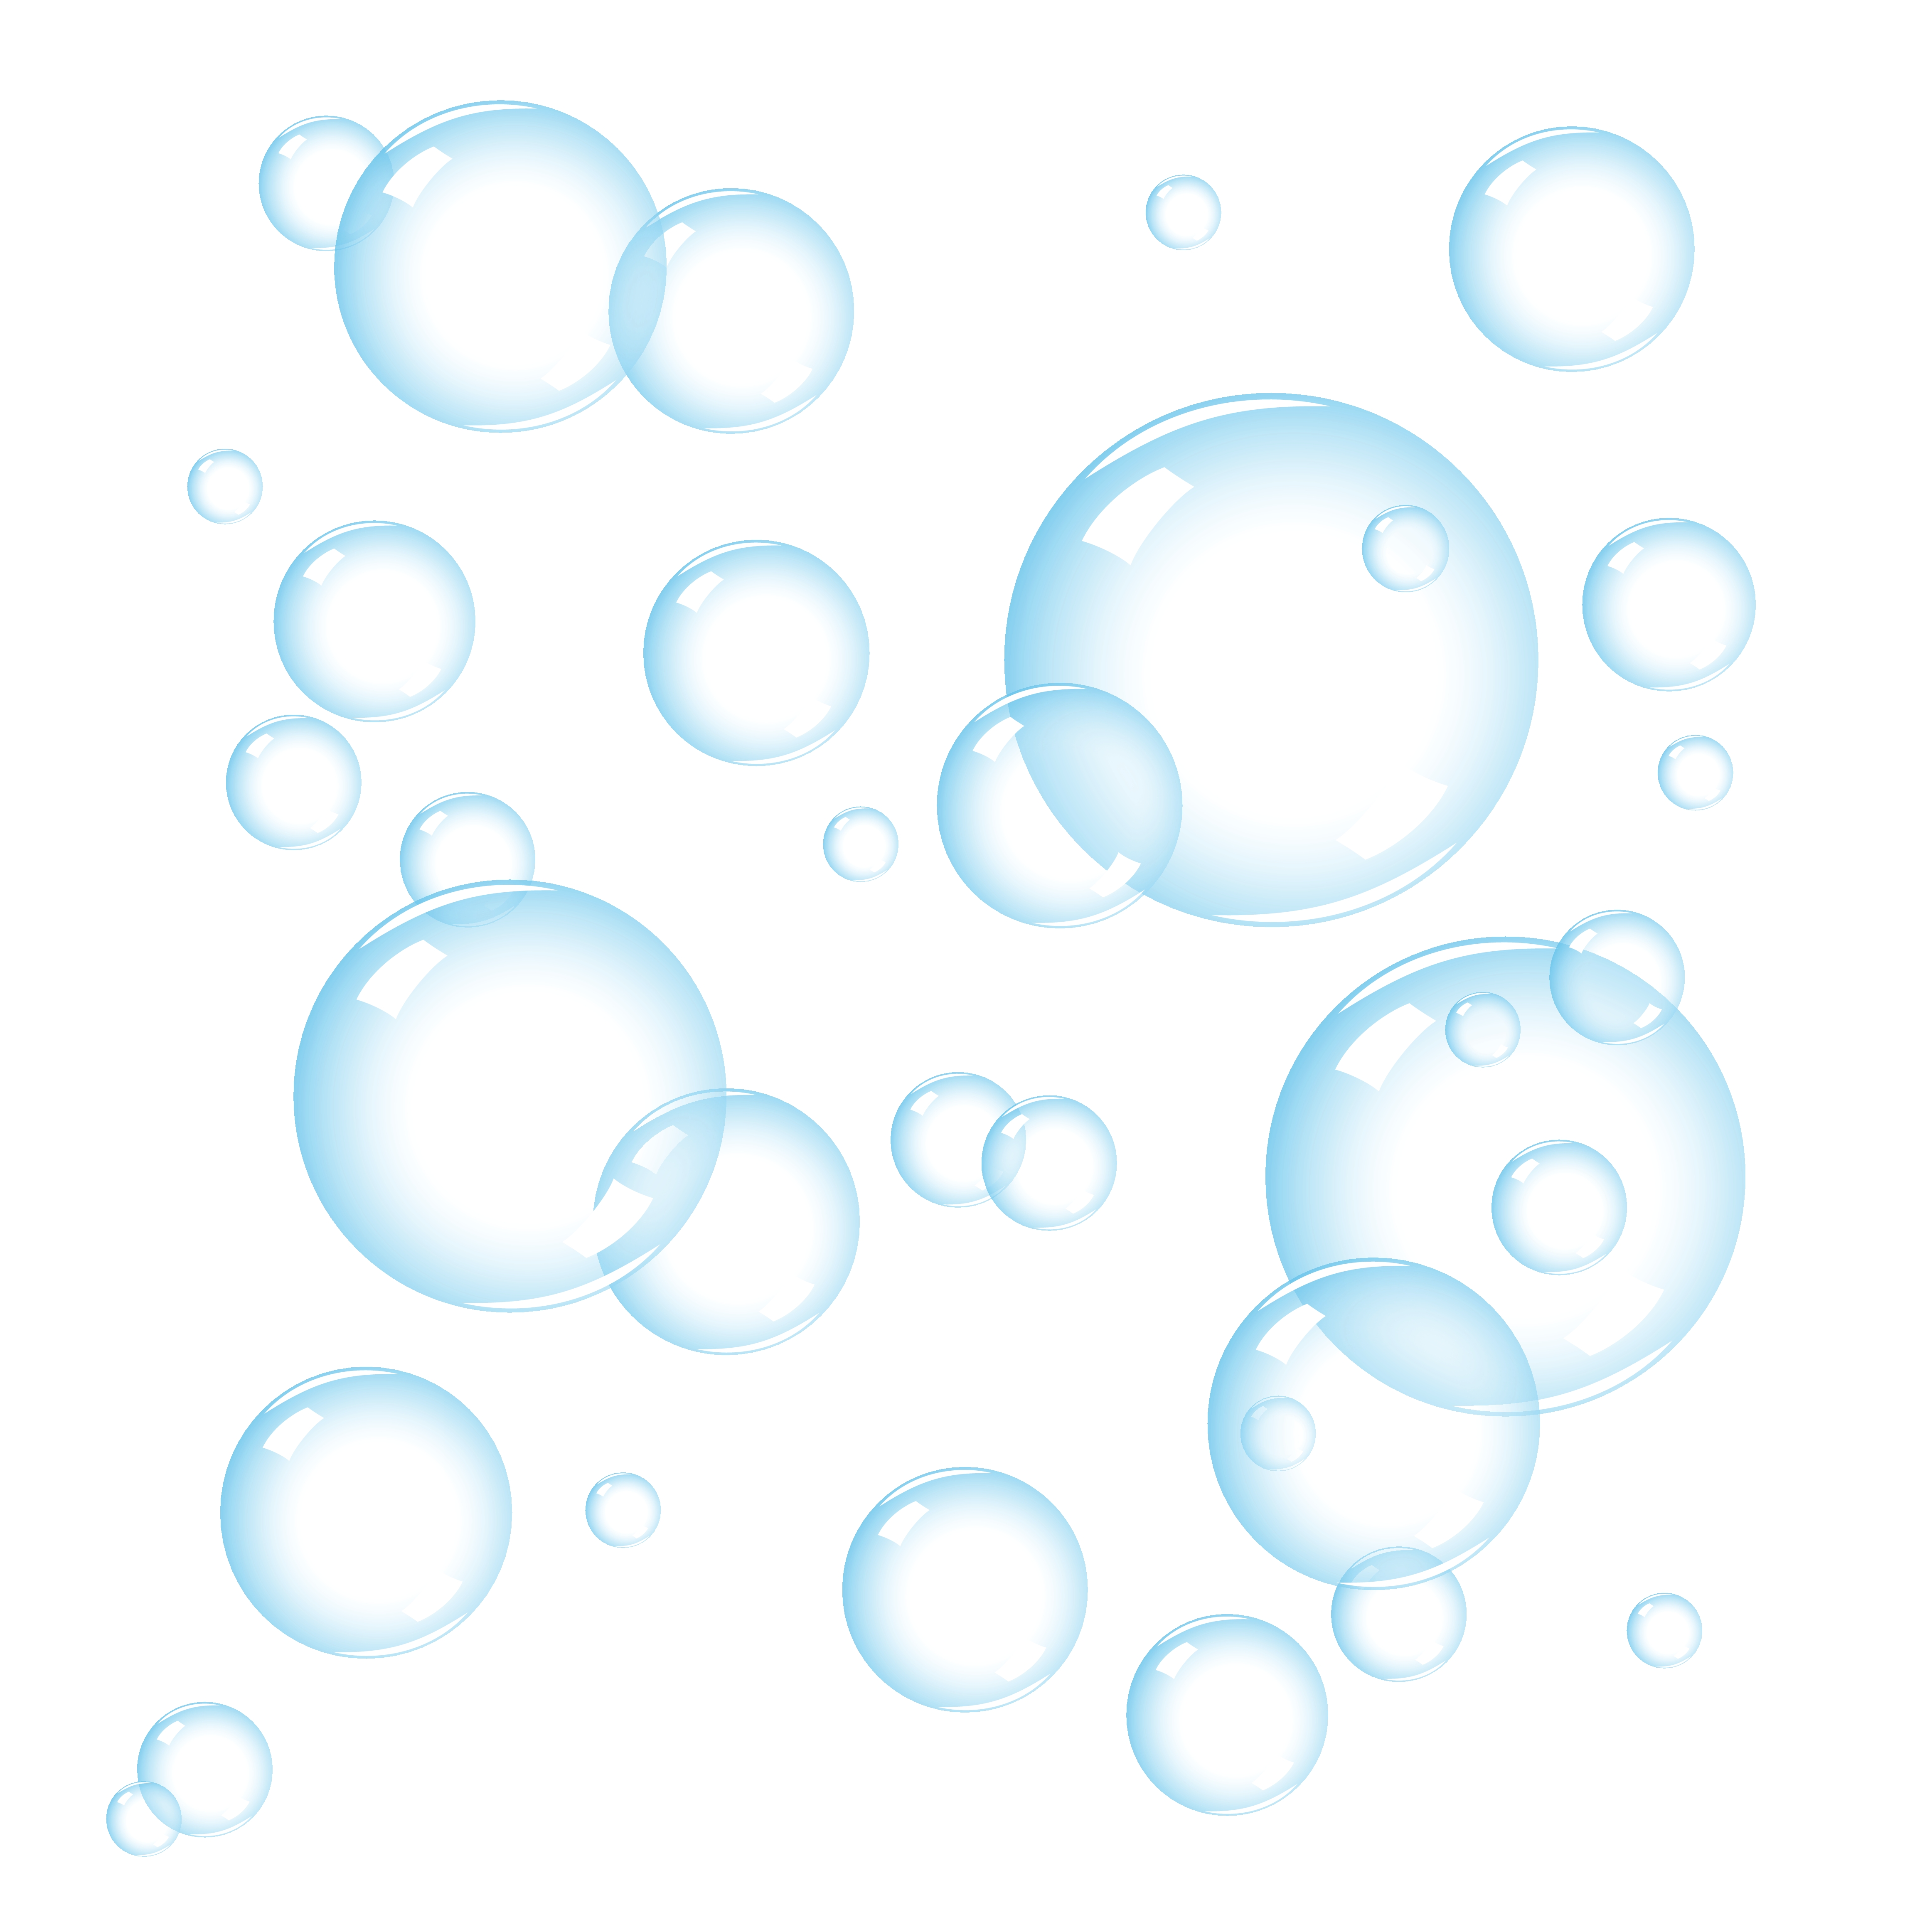 Bubbles Clip Art Free - Bubbles Clipart